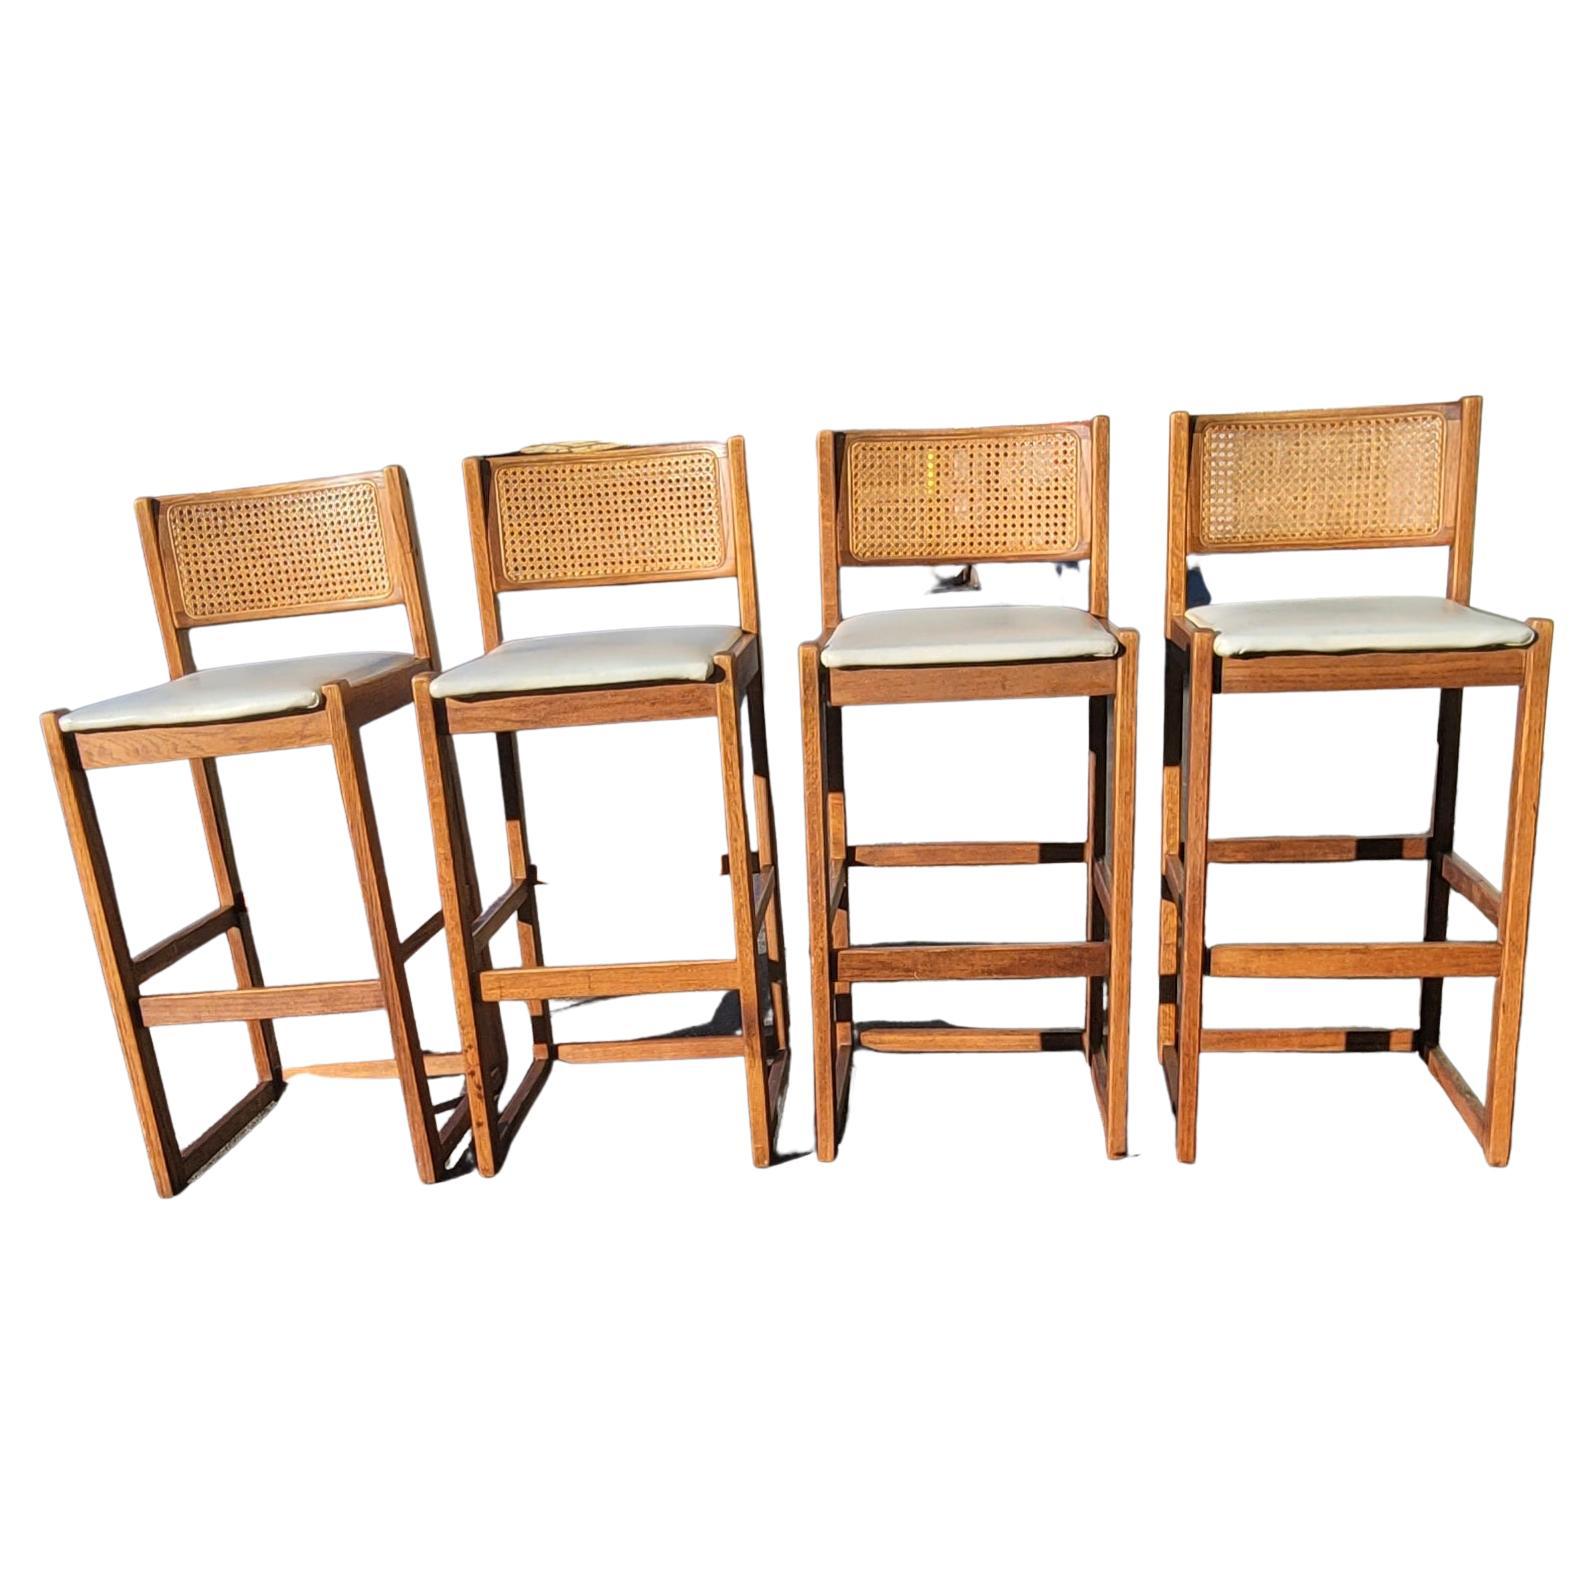 Un ensemble de quatre (4) tabourets de bar en chêne et dossier en canne avec siège en simili cuir des années 1970 de Whitaker Furniture en bon état vintage. Mesure 17